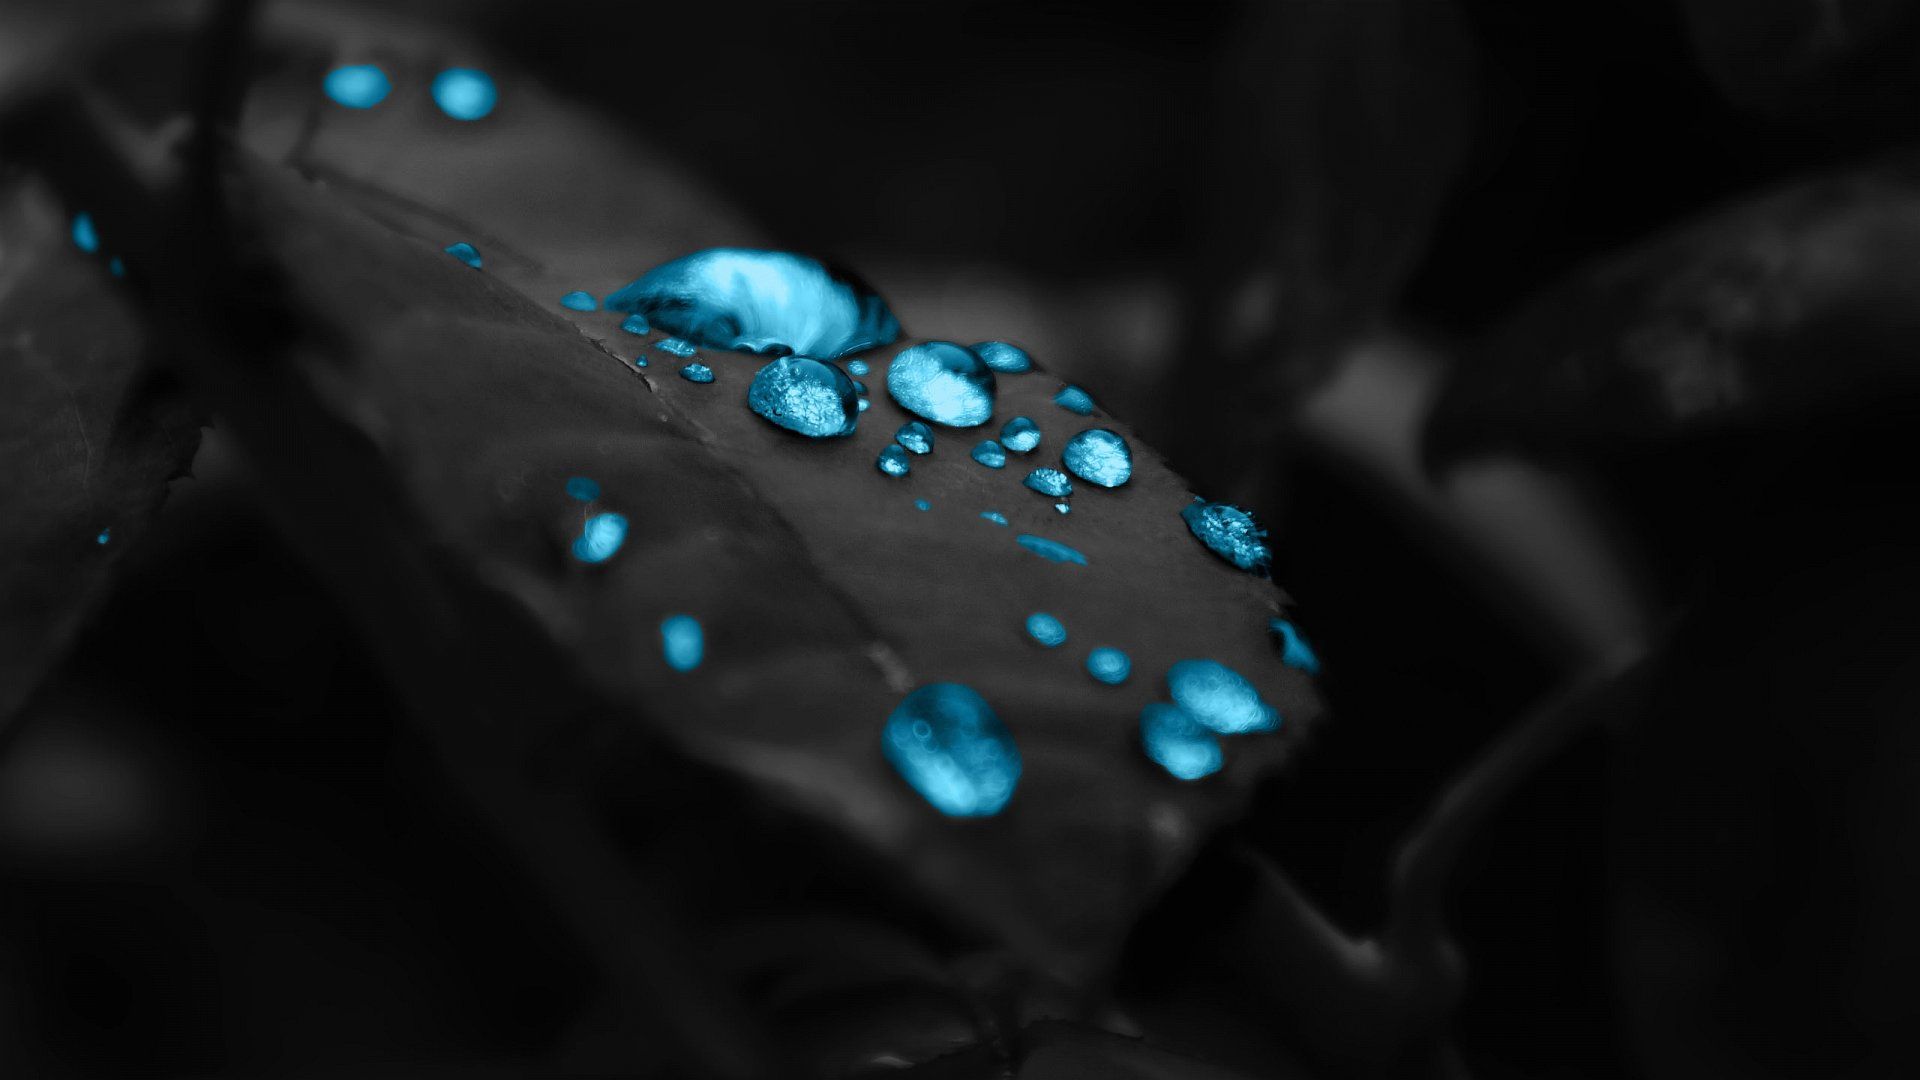 Wallpaper Blue Drops In A Black Leaf 1920 X 1080 Full Hd - 1920 x ...